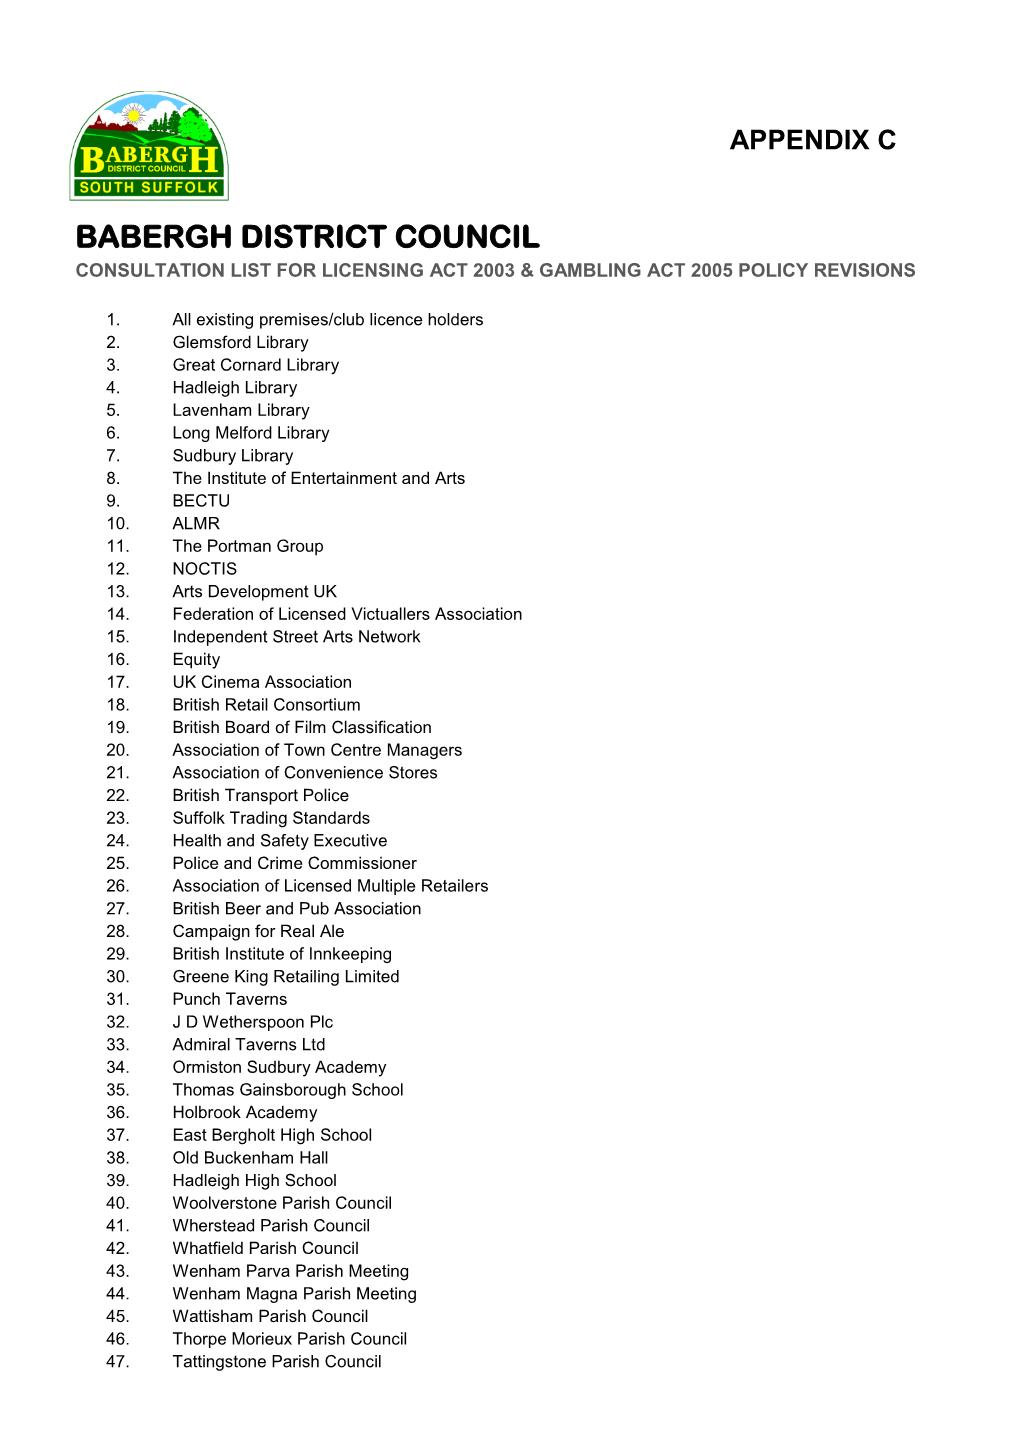 Appendix C Babergh District Council